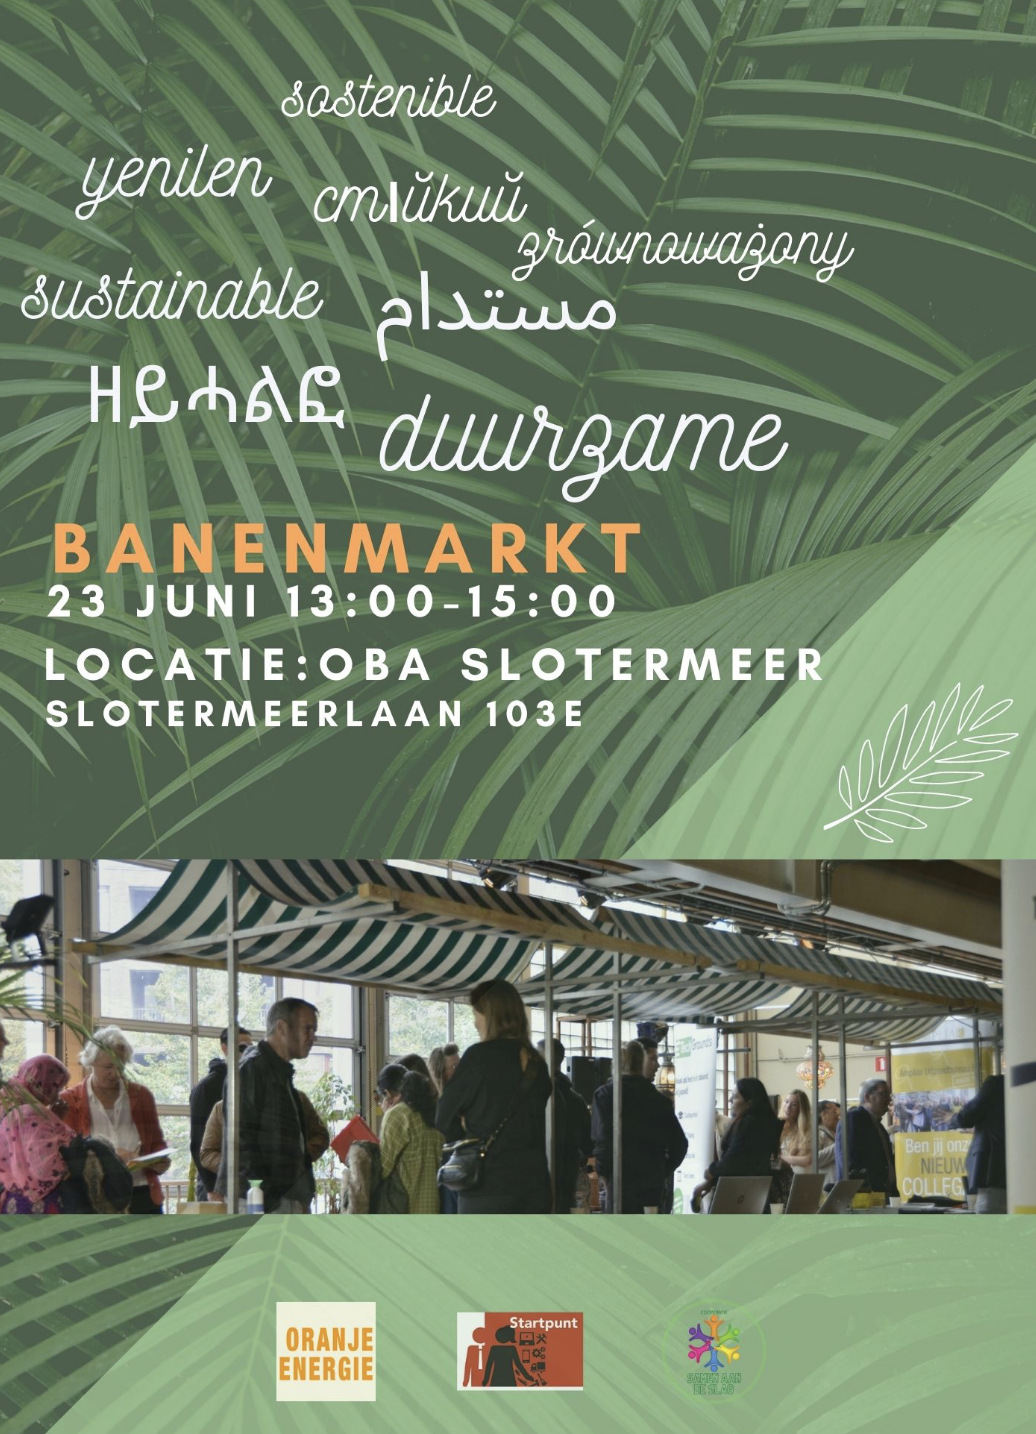 Duurzame banenmarkt OBA Slotermeer 23 juni 13.00-15.00 uur